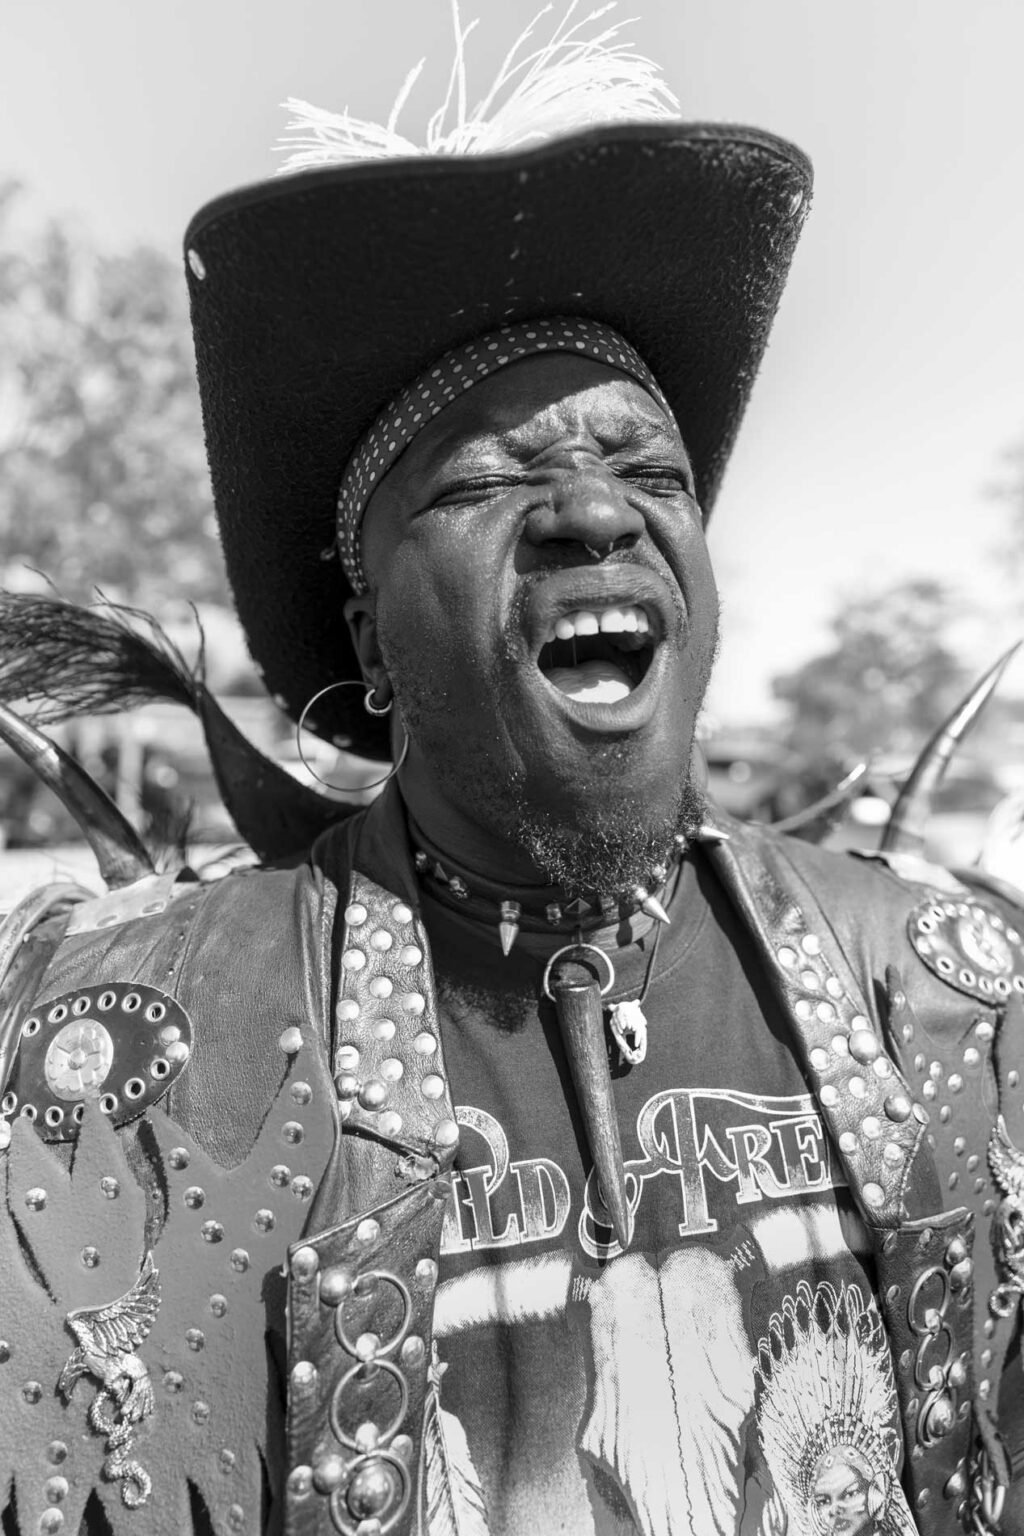 Жара, Африка, Дэт-метал: фоторепортаж с фестиваля металюг в Ботсване интересное,интересные факты,история,мир,путешествия,туризм,фотография,экстремальный туризм